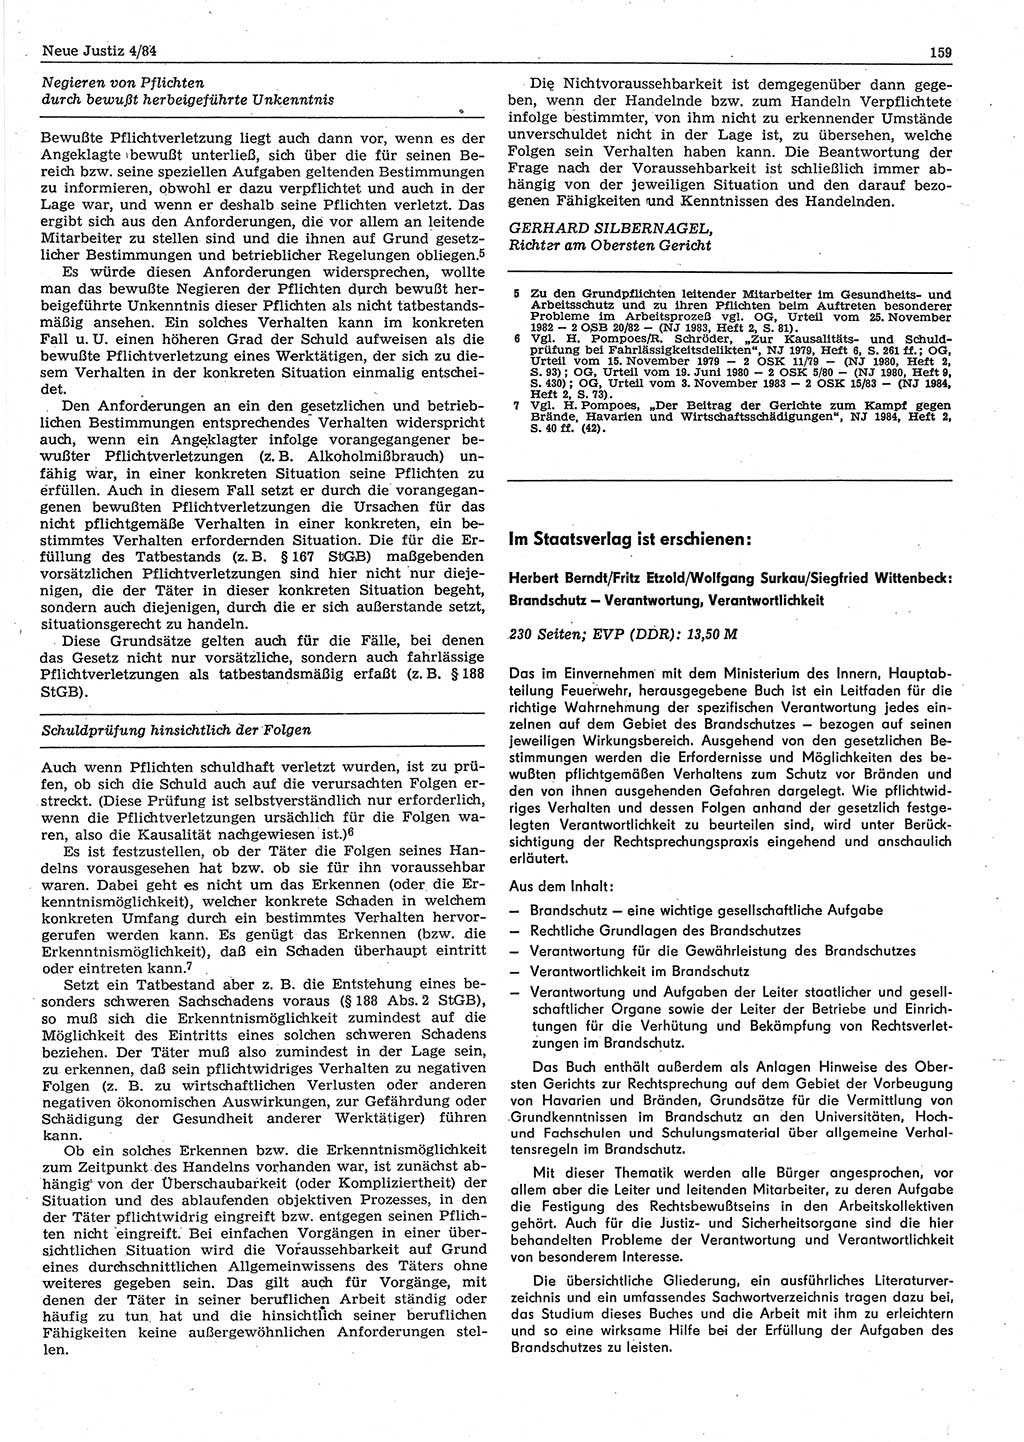 Neue Justiz (NJ), Zeitschrift für sozialistisches Recht und Gesetzlichkeit [Deutsche Demokratische Republik (DDR)], 38. Jahrgang 1984, Seite 159 (NJ DDR 1984, S. 159)